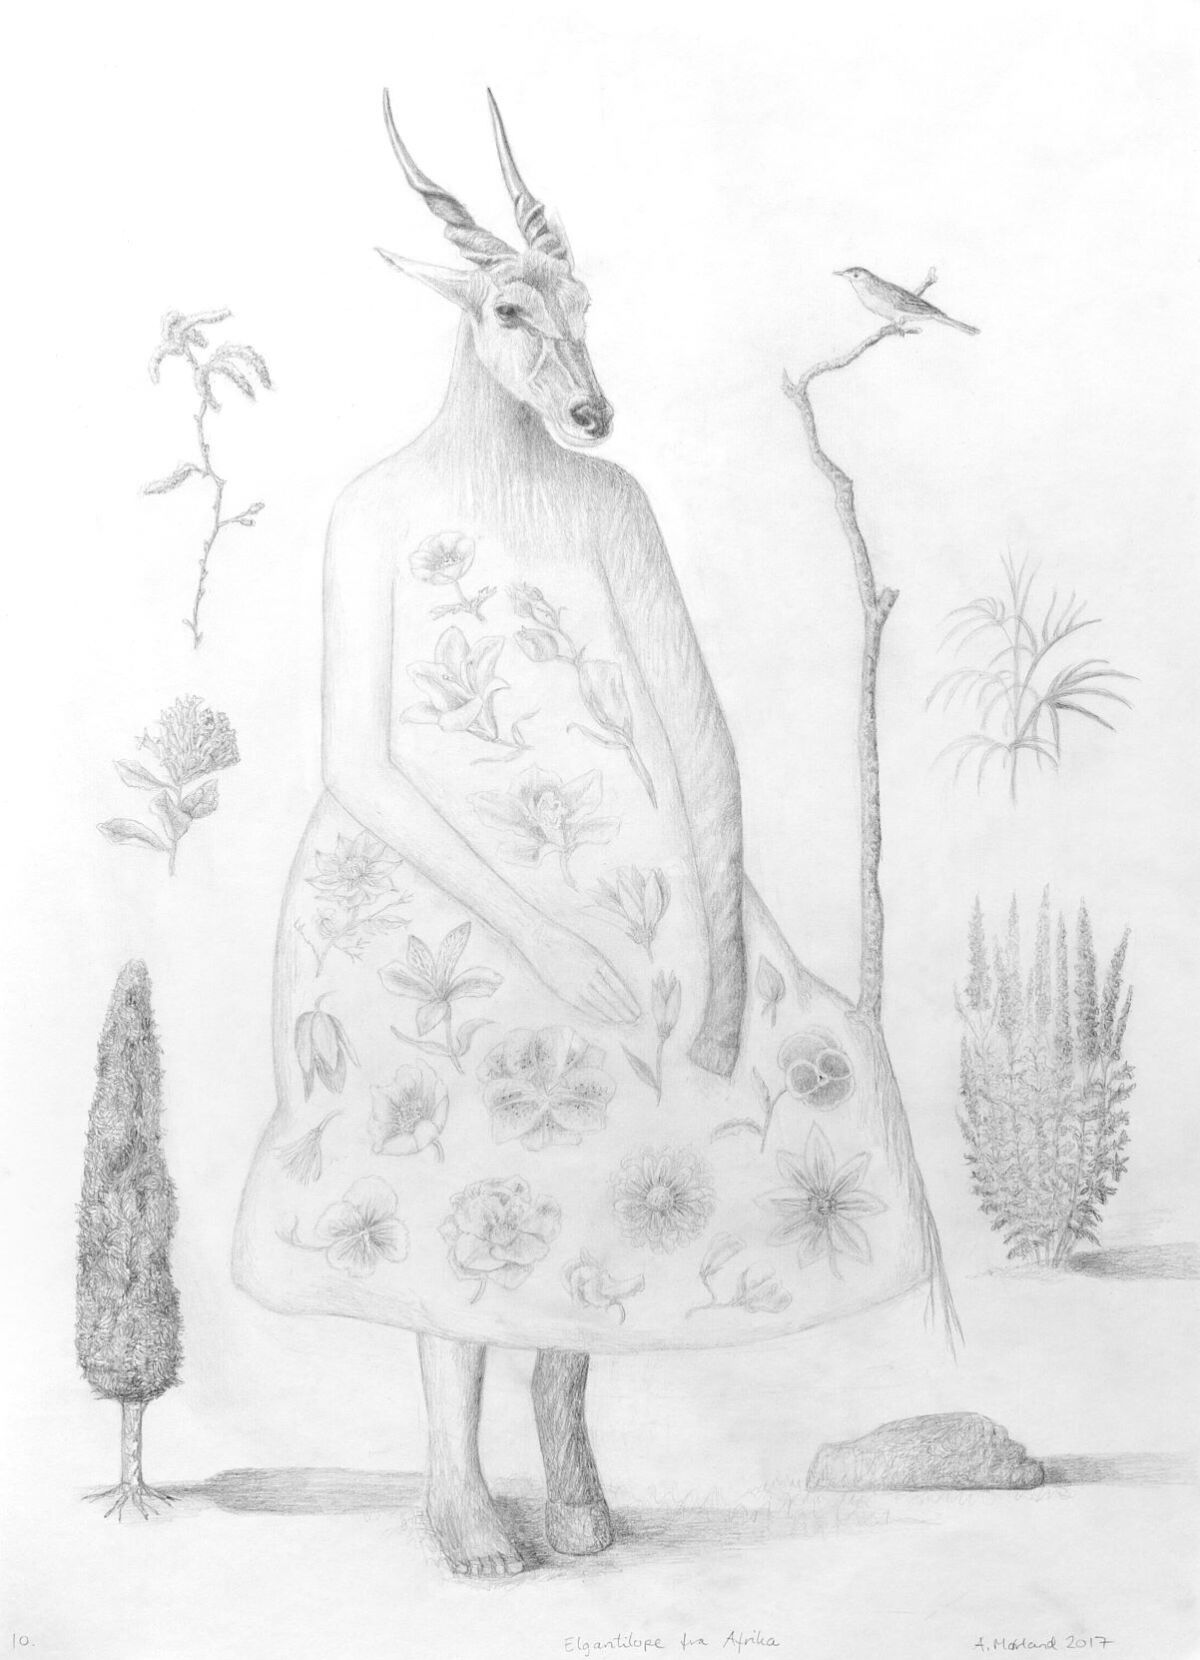 Tegning av en bukk som står på to ben. På kroppen har den en blomsterkjole. Illustrasjon.